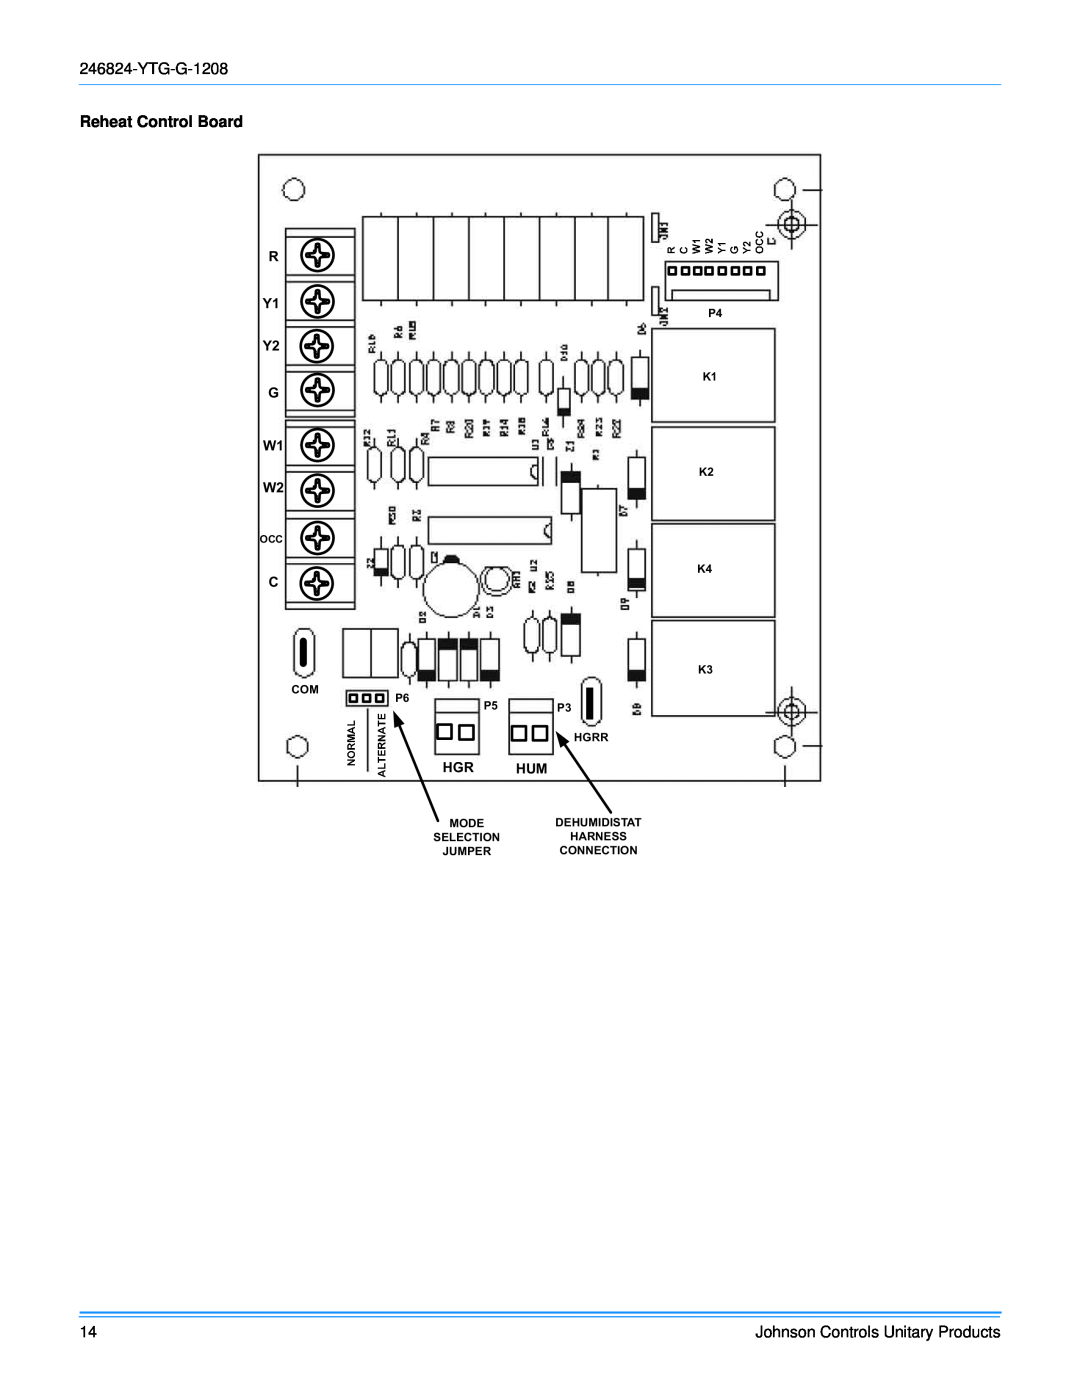 York R-410A manual Reheat Control Board, R Y1, G W1, Hgr Hum 